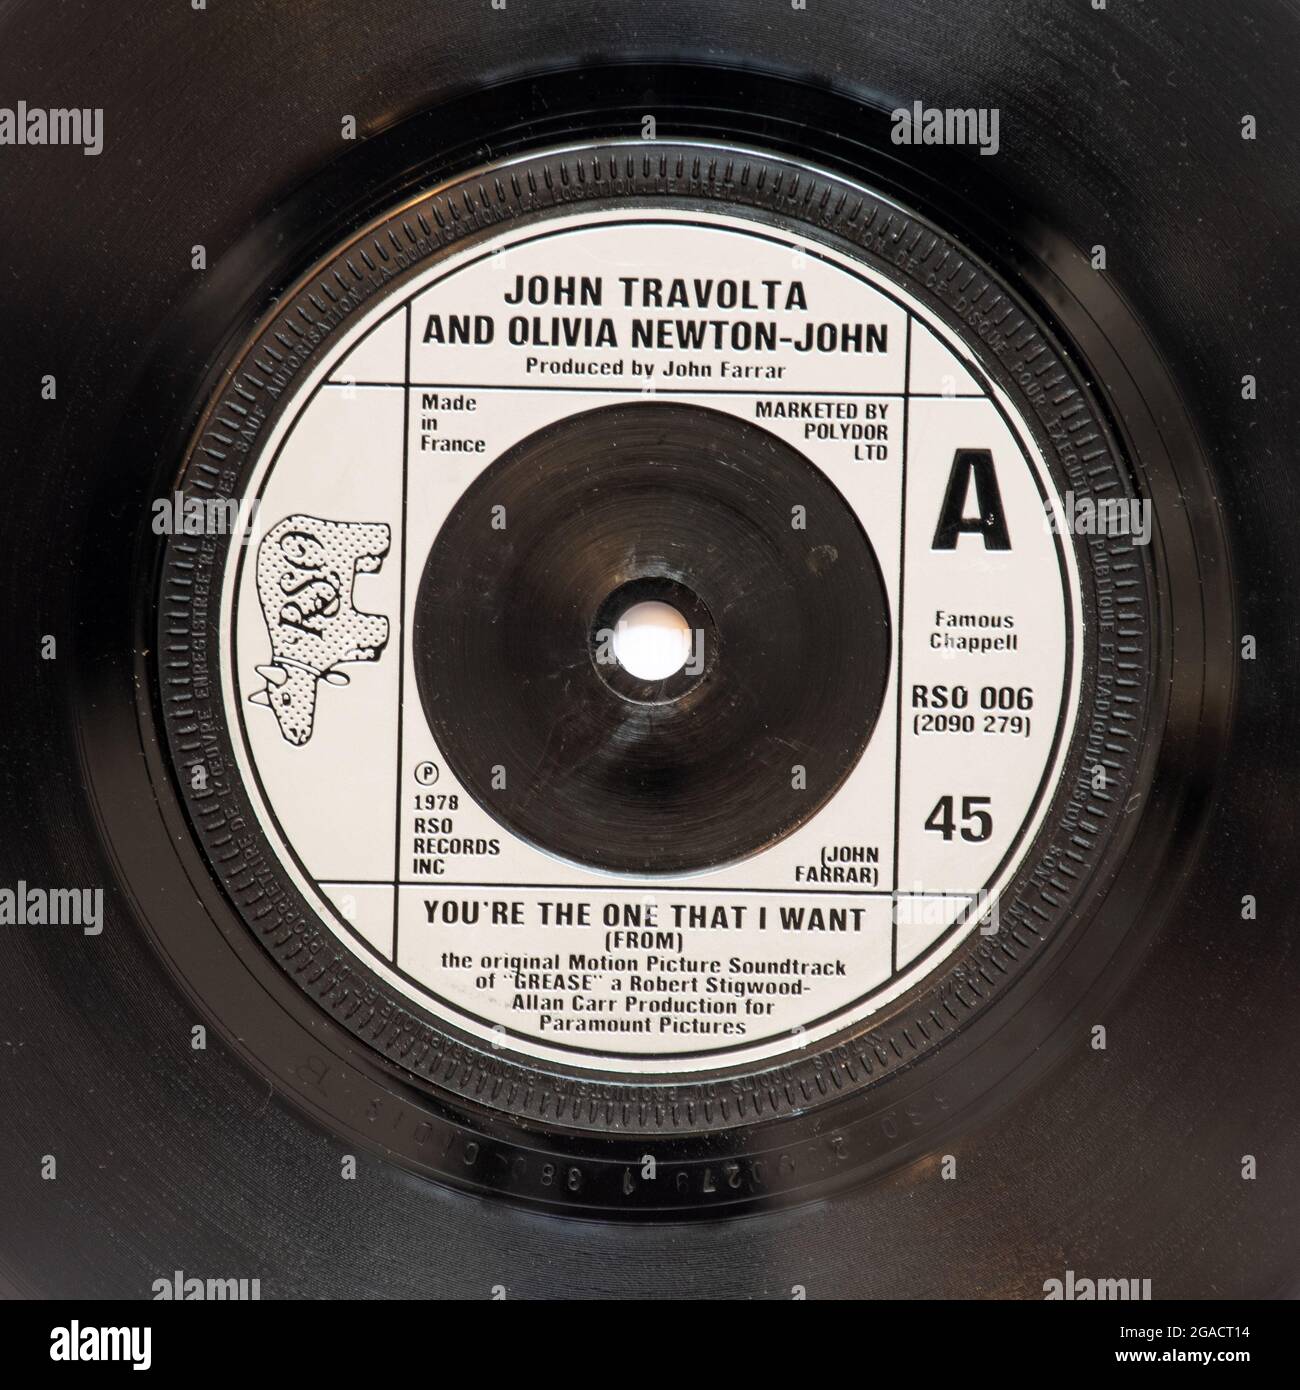 You're the One That I Want von John Travolta und Olivia Newton-John, einem Stockfoto der 7' Single Vinyl-Schallplatte mit 45 U/min im Cover Stockfoto